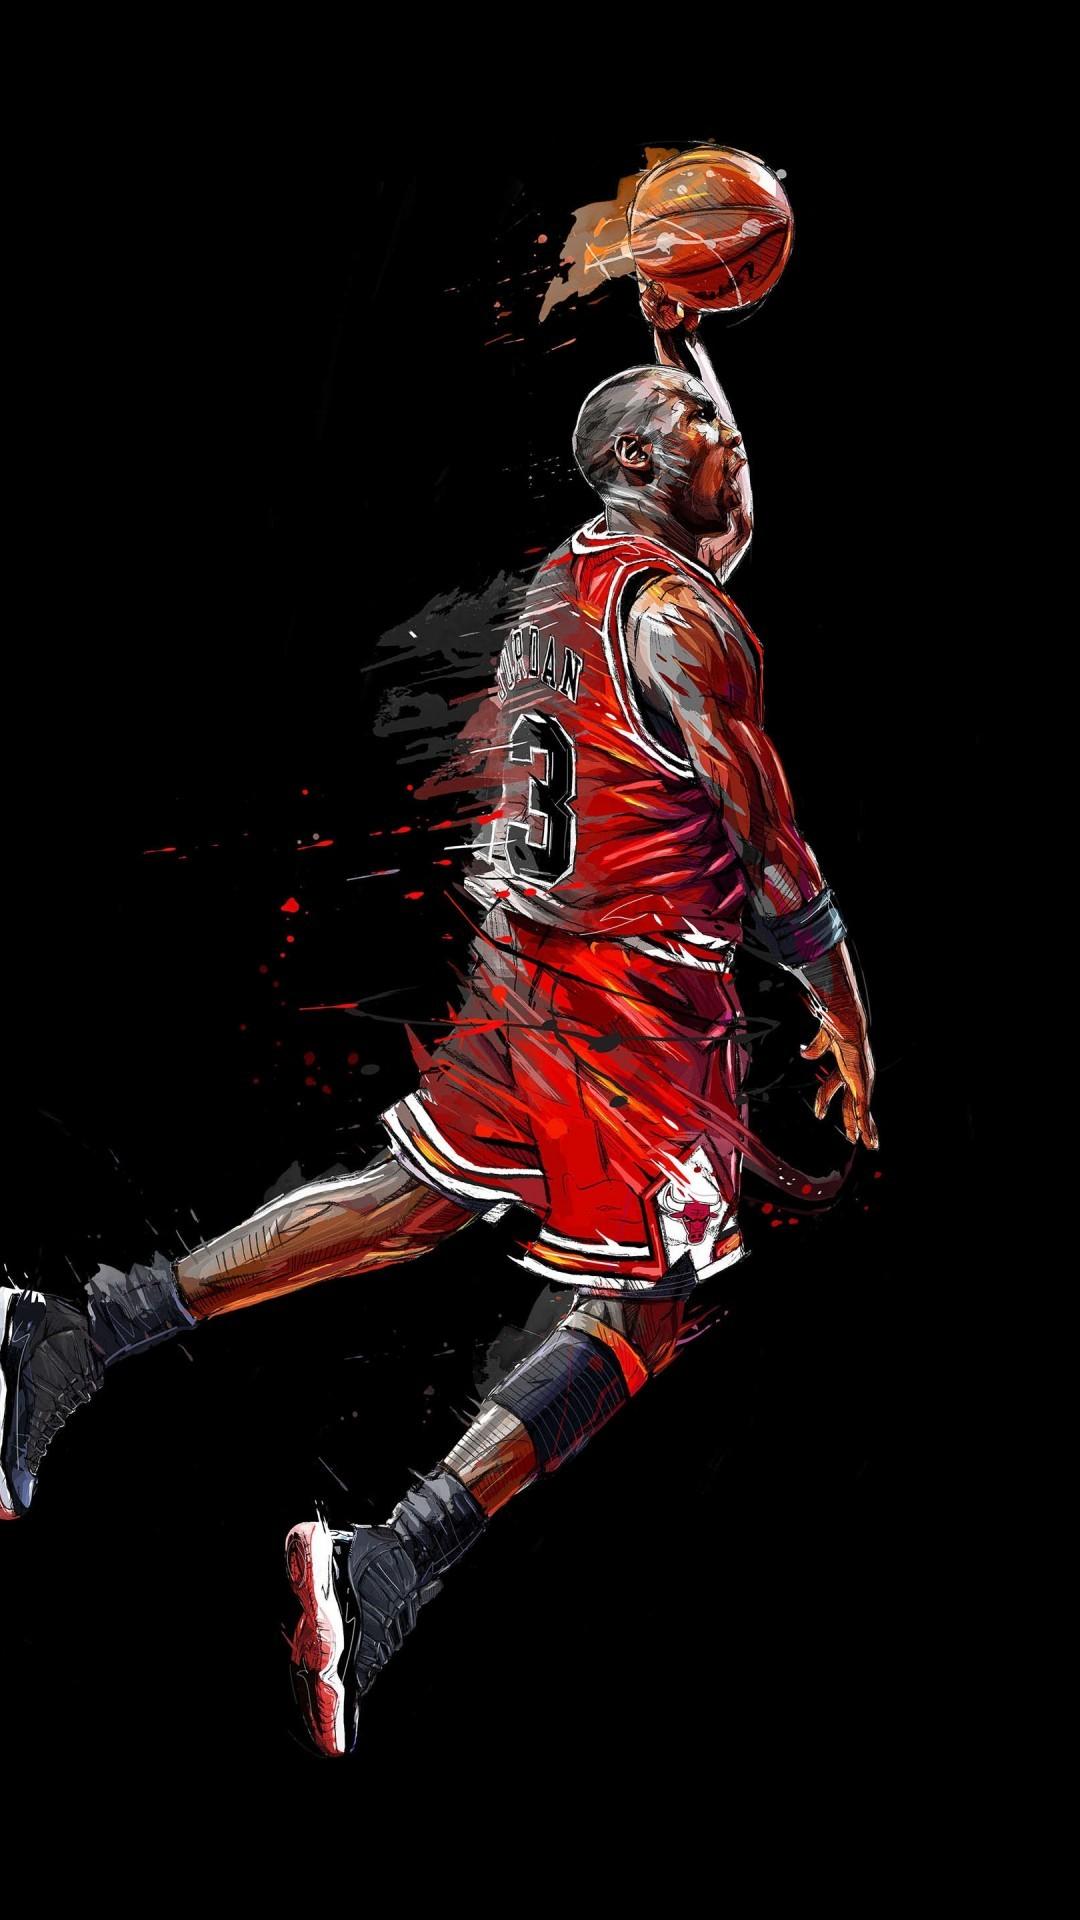 Nike Air Jordan Wallpapers - Wallpaper Cave